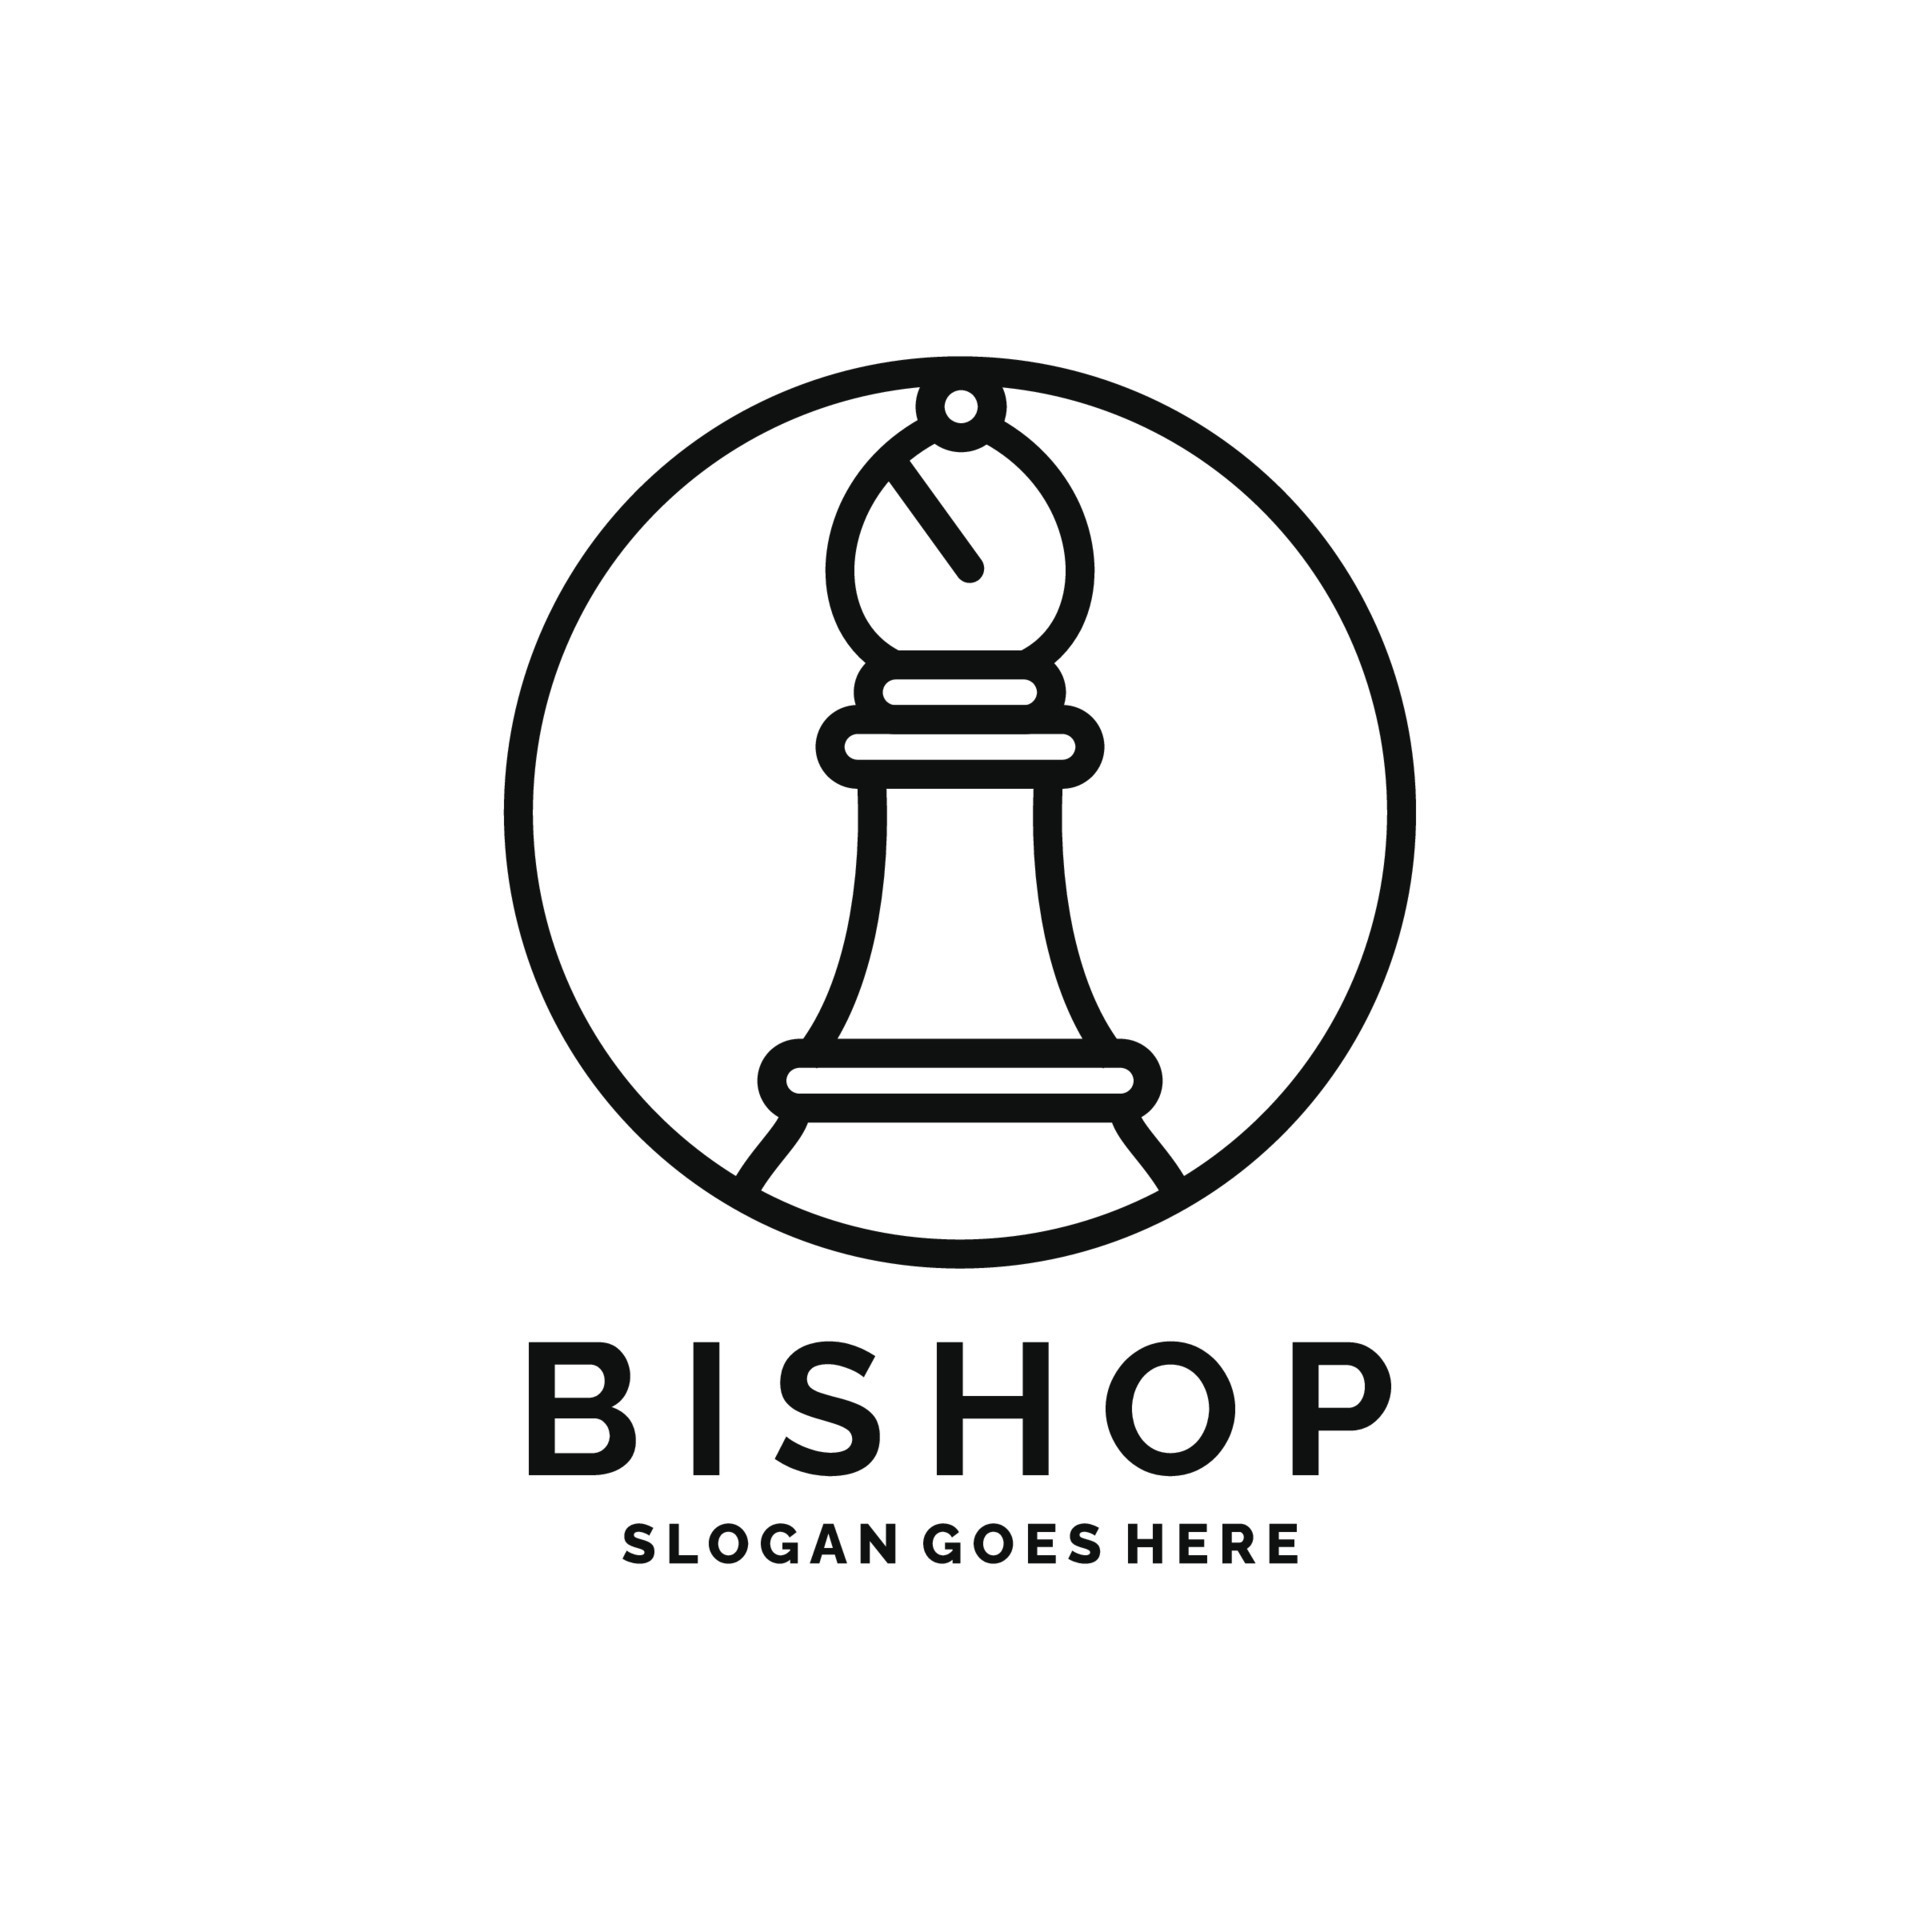 xadrez e bispo peça logotipo ilustração vetorial vintage modelo ícone  design gráfico. sinal retrô ou símbolo para torneio ou clube de xadrez  5415290 Vetor no Vecteezy